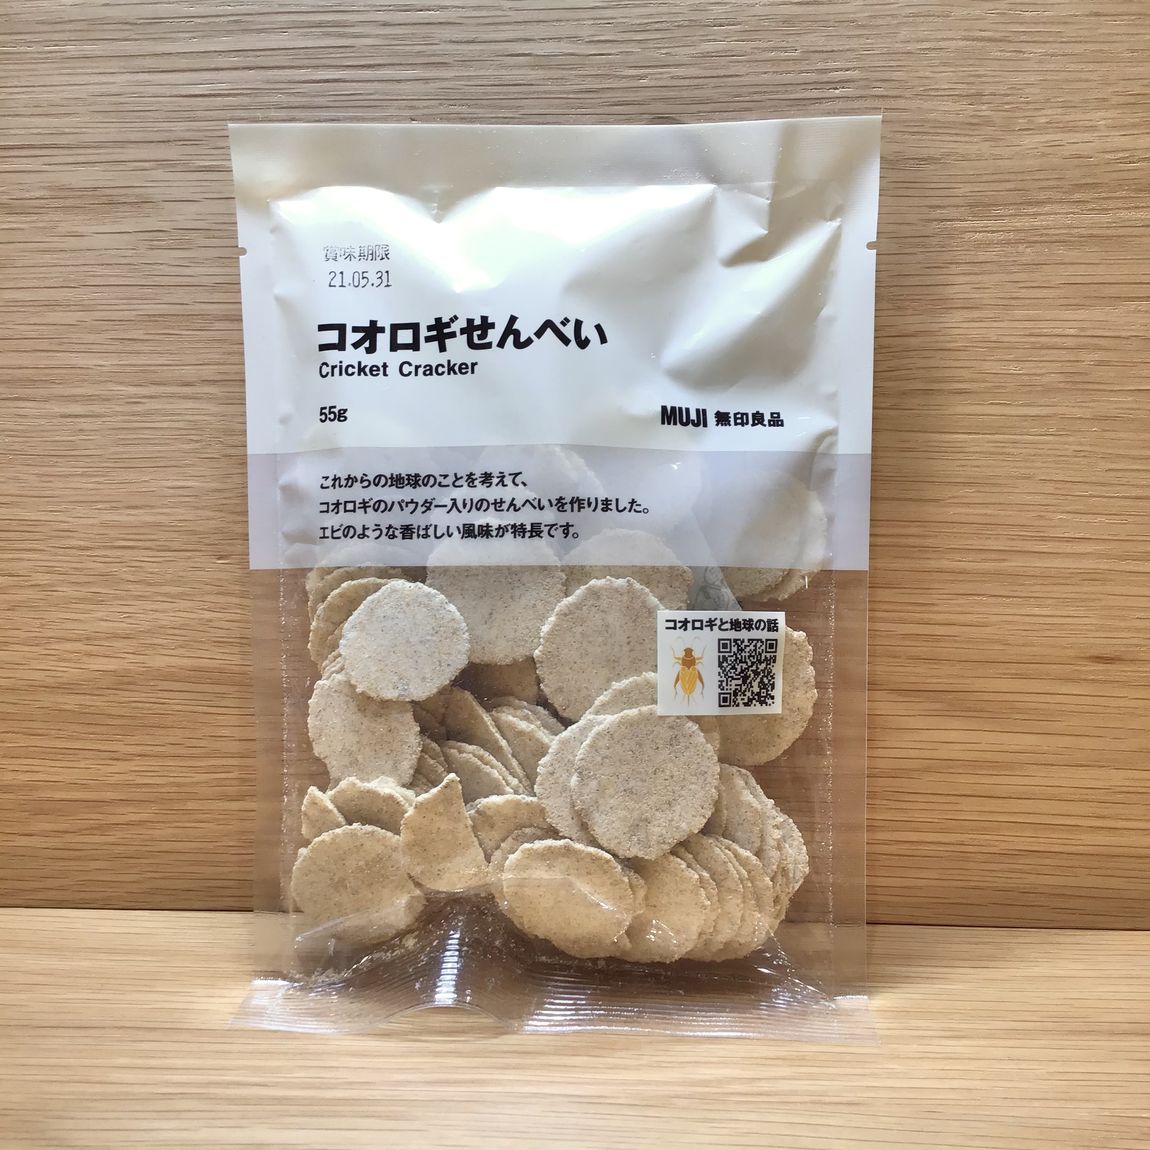 【札幌ステラプレイス】コオロギせんべいパッケージ画像